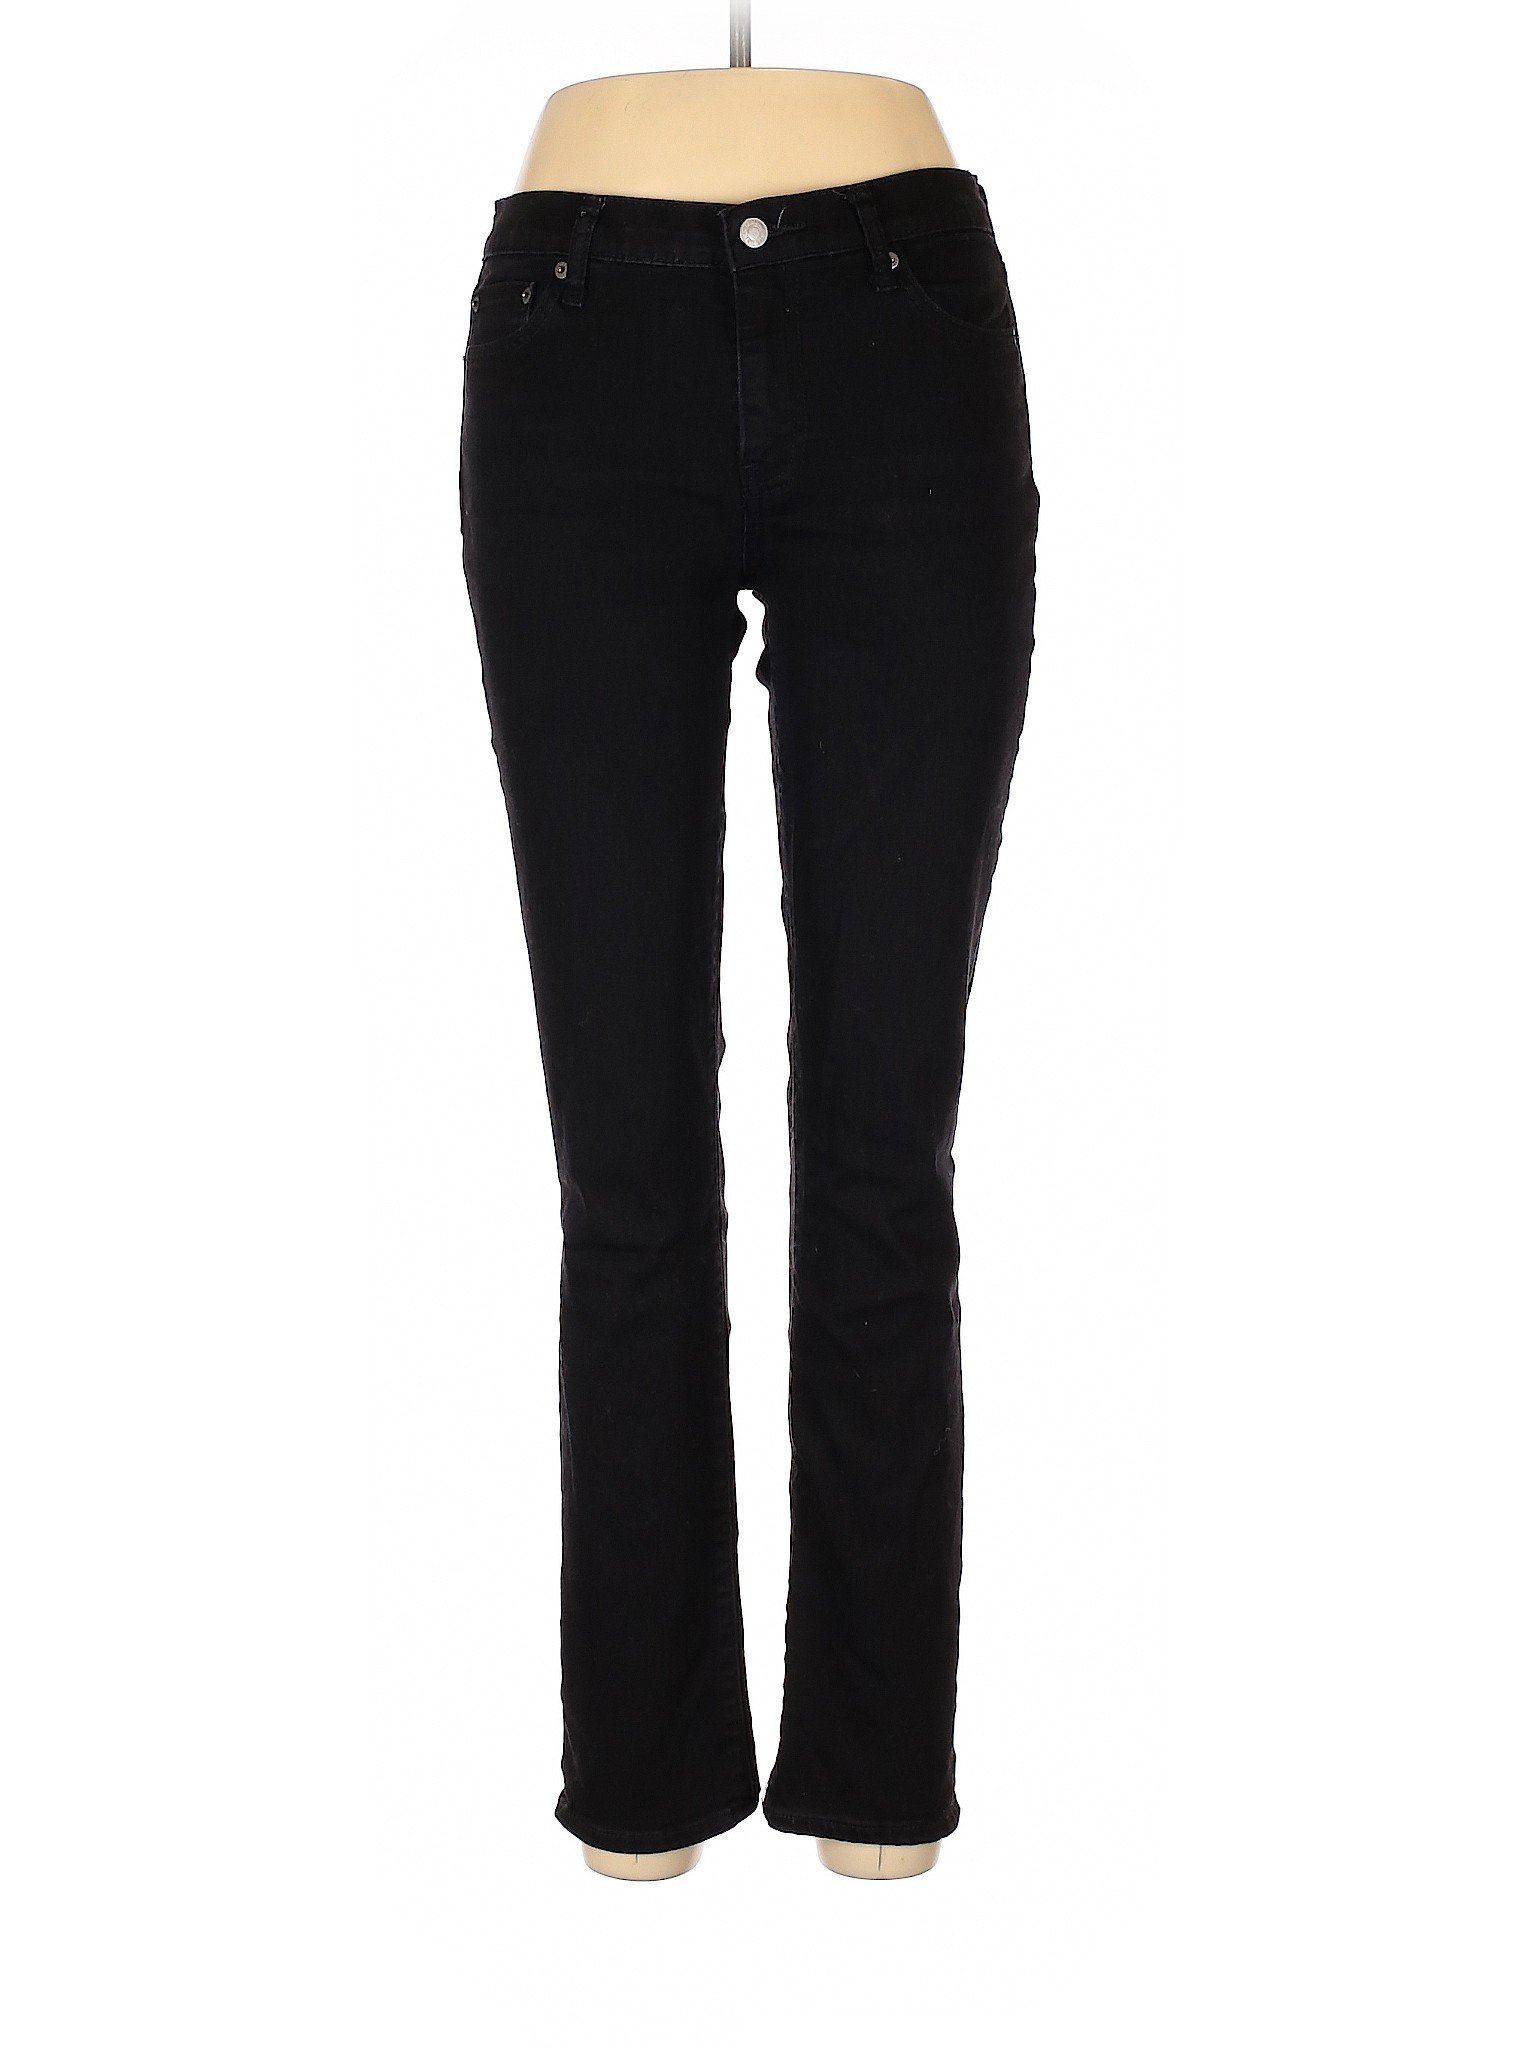 Gap Women Black Jeans 29W | eBay